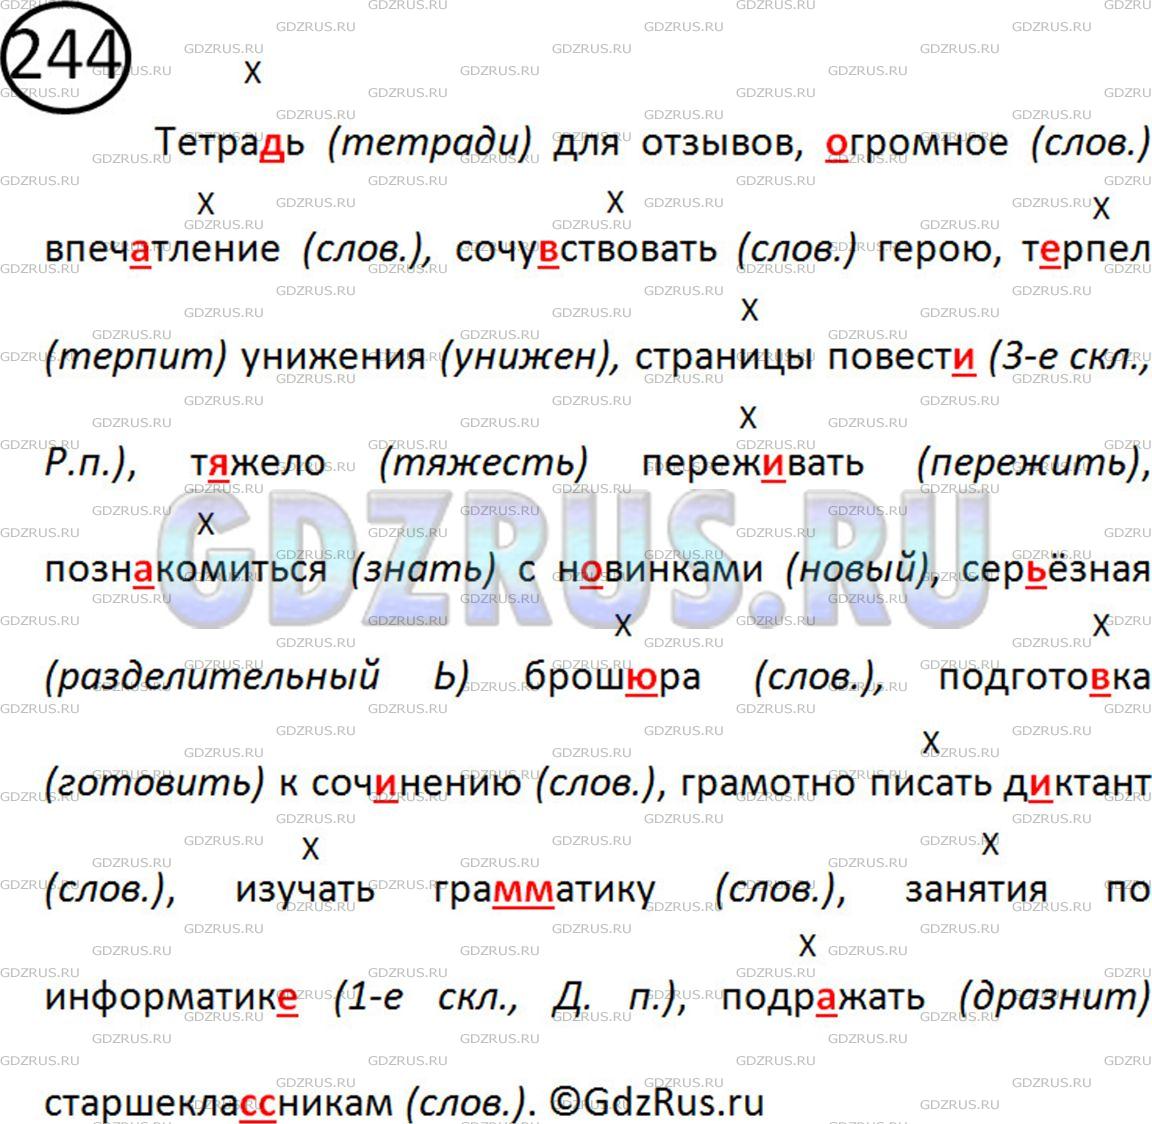 Фото решения 2: Номер №251 из ГДЗ по Русскому языку 5 класс: Ладыженская Т.А. 2019г.